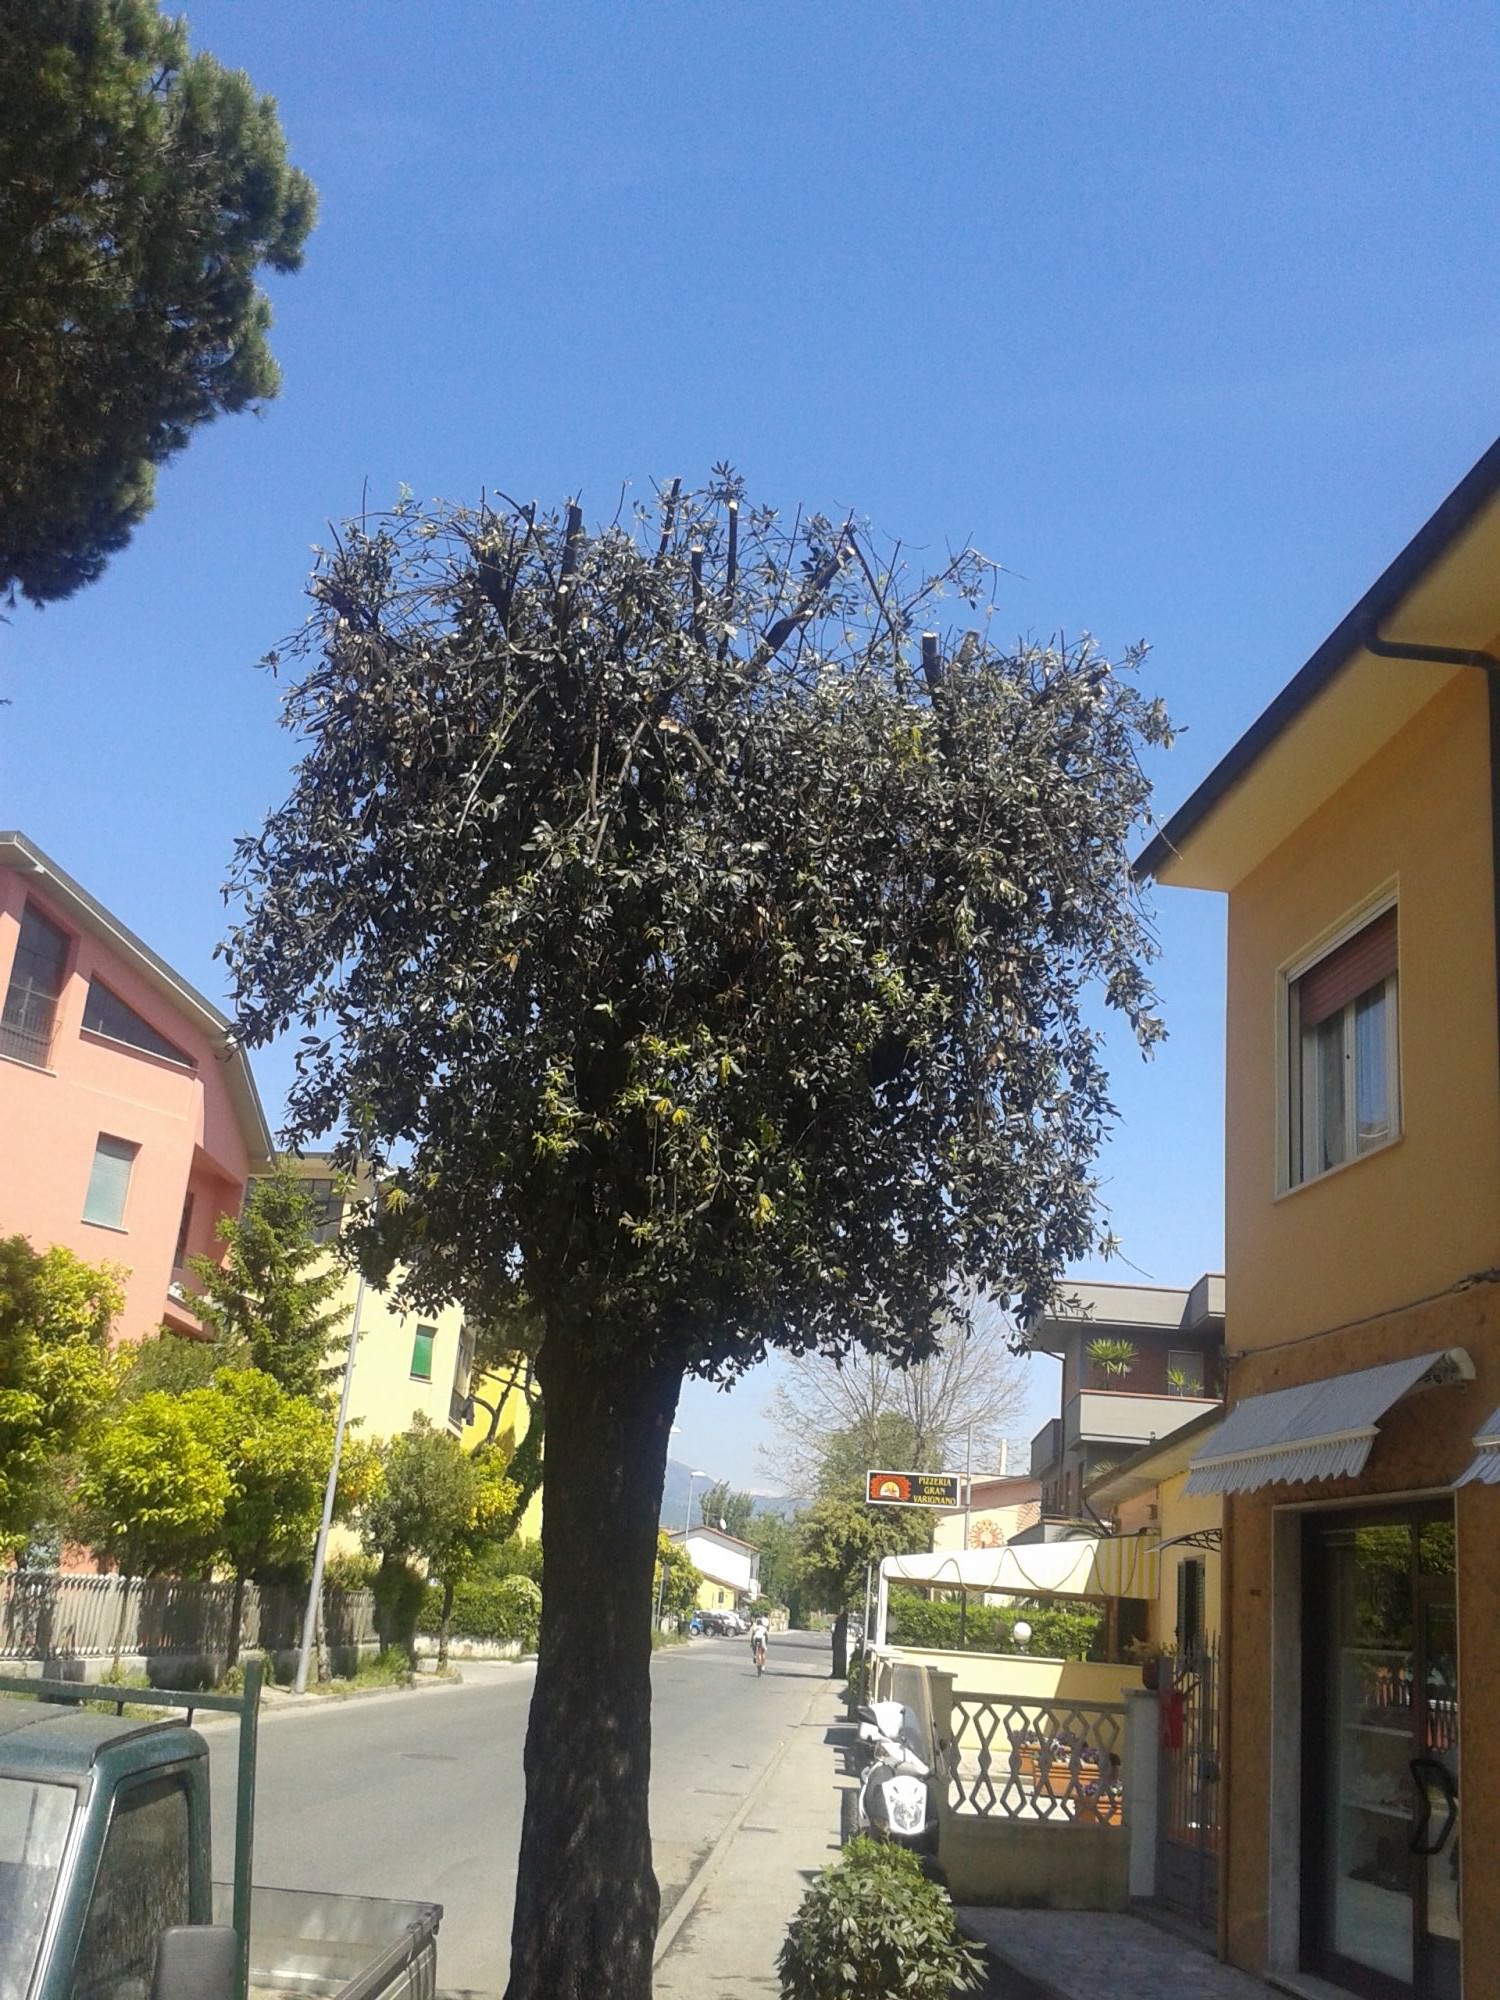 Potato, dopo un anno di proteste, l’albero al Varignano